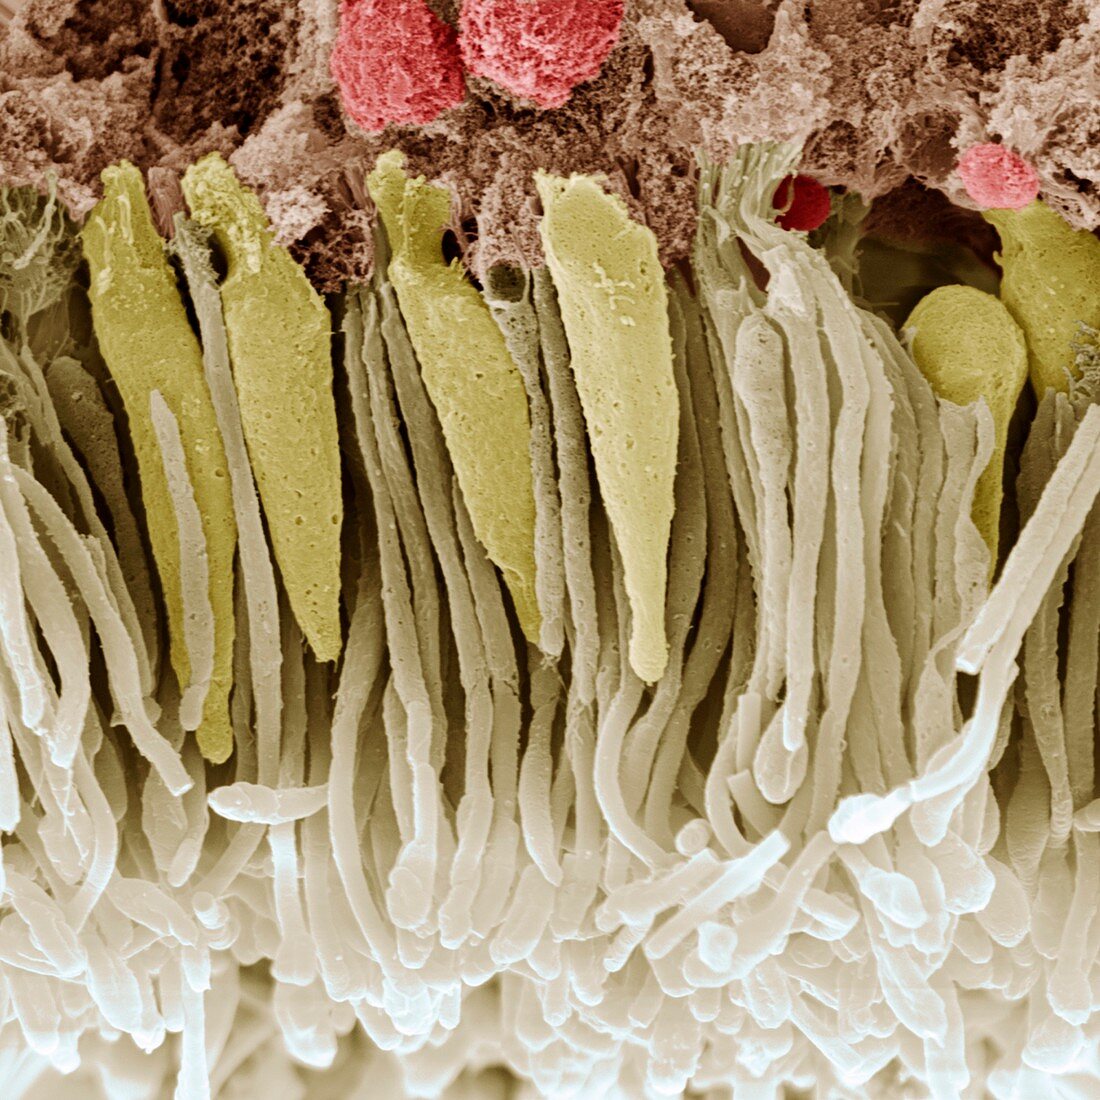 Retina rod and cone cells, SEM